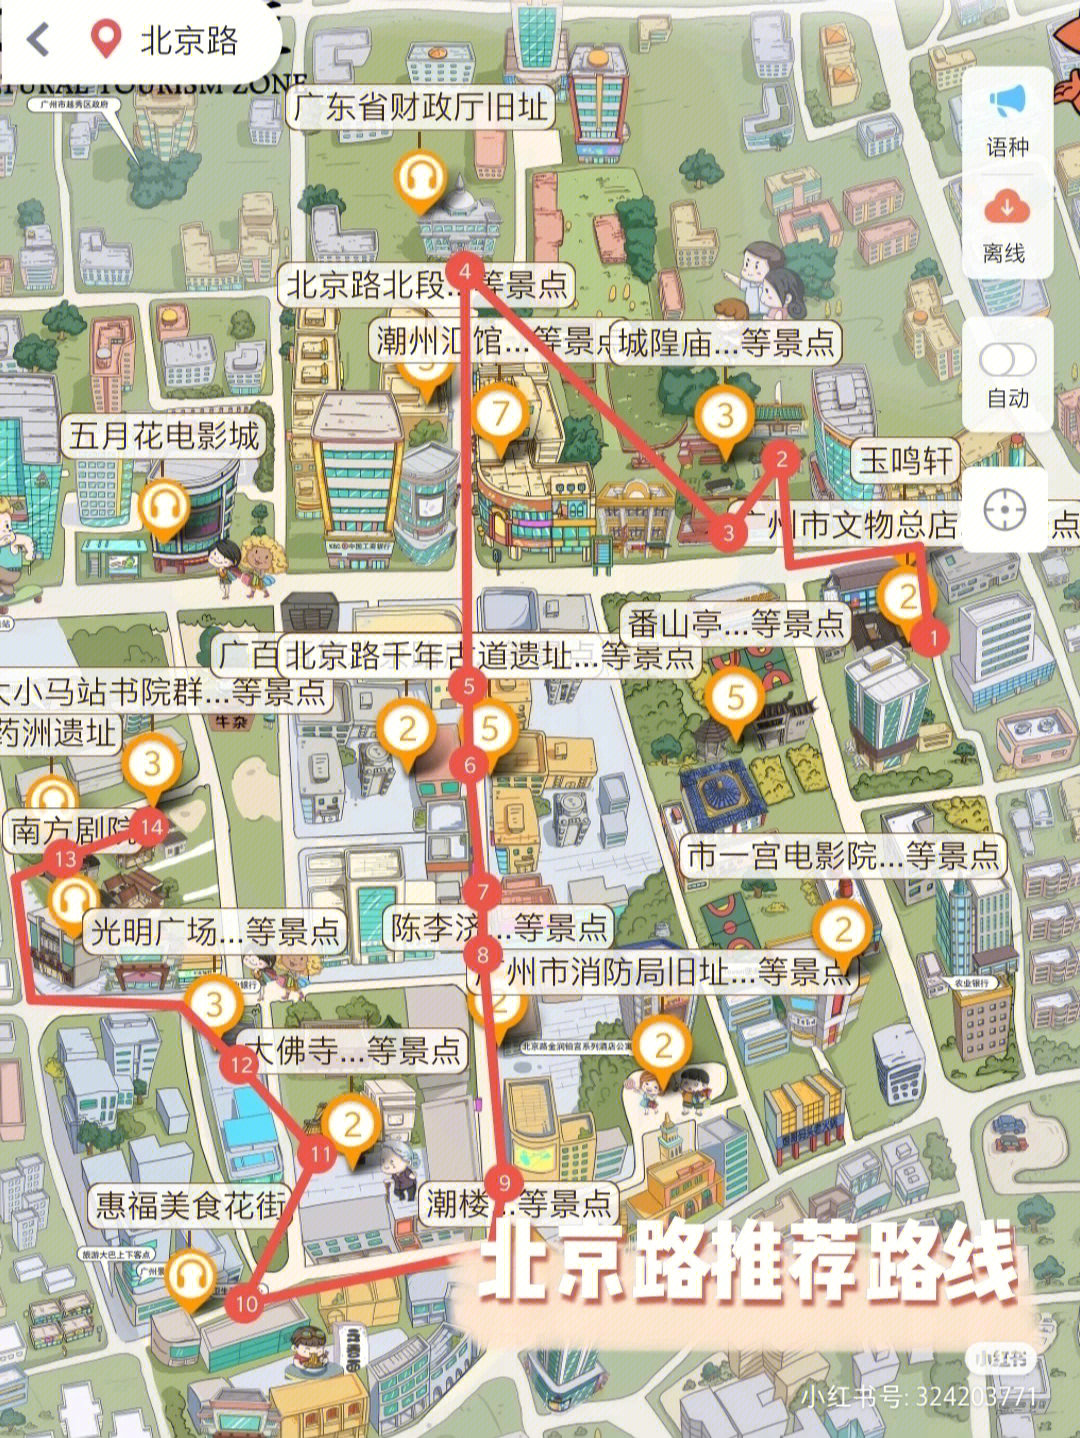 地铁口e口出门没走多远就看到北京路口,然后在一直走可以在地图上看到